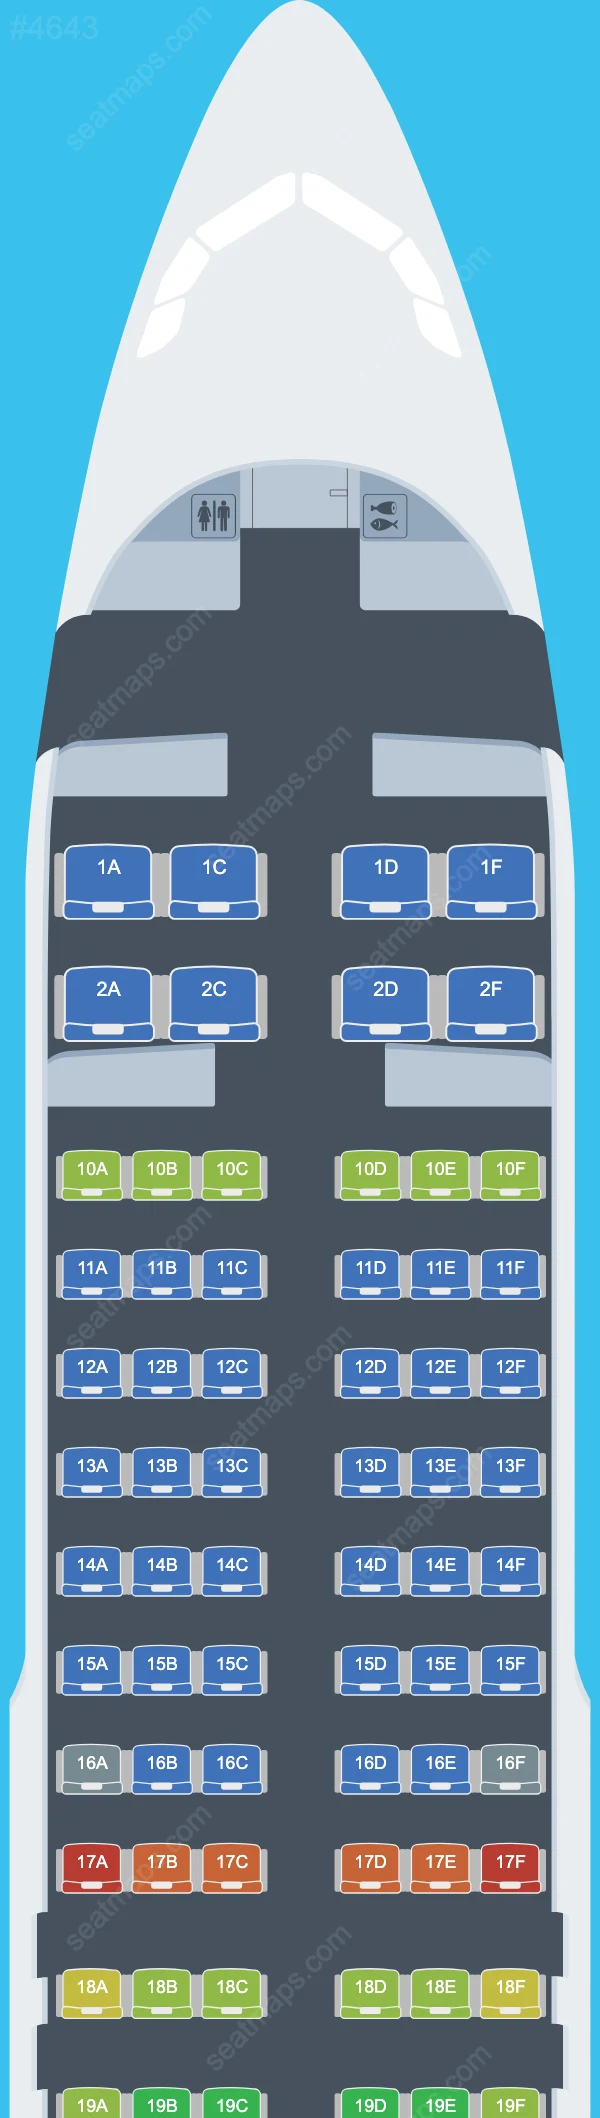 Nile Air Airbus A320 Seat Maps A320-200 V.1